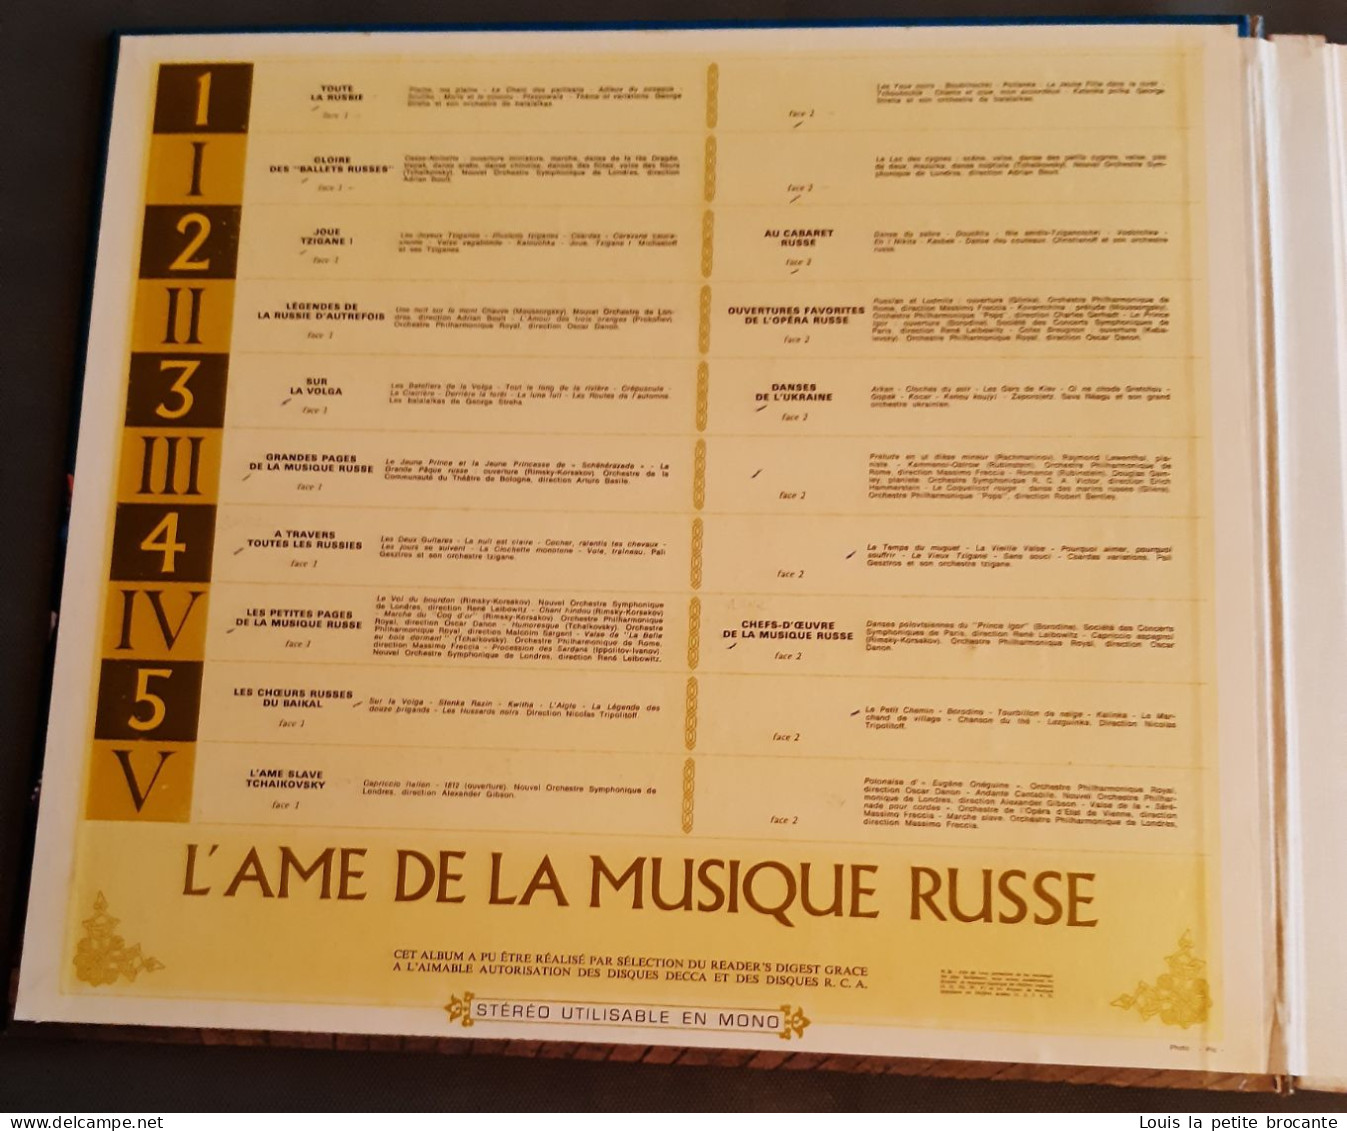 Coffret de 10 disques vinyles, L'AME DE LA MUSIQUE RUSSE, DECCA et RCA - Sélection du Reader's Digest